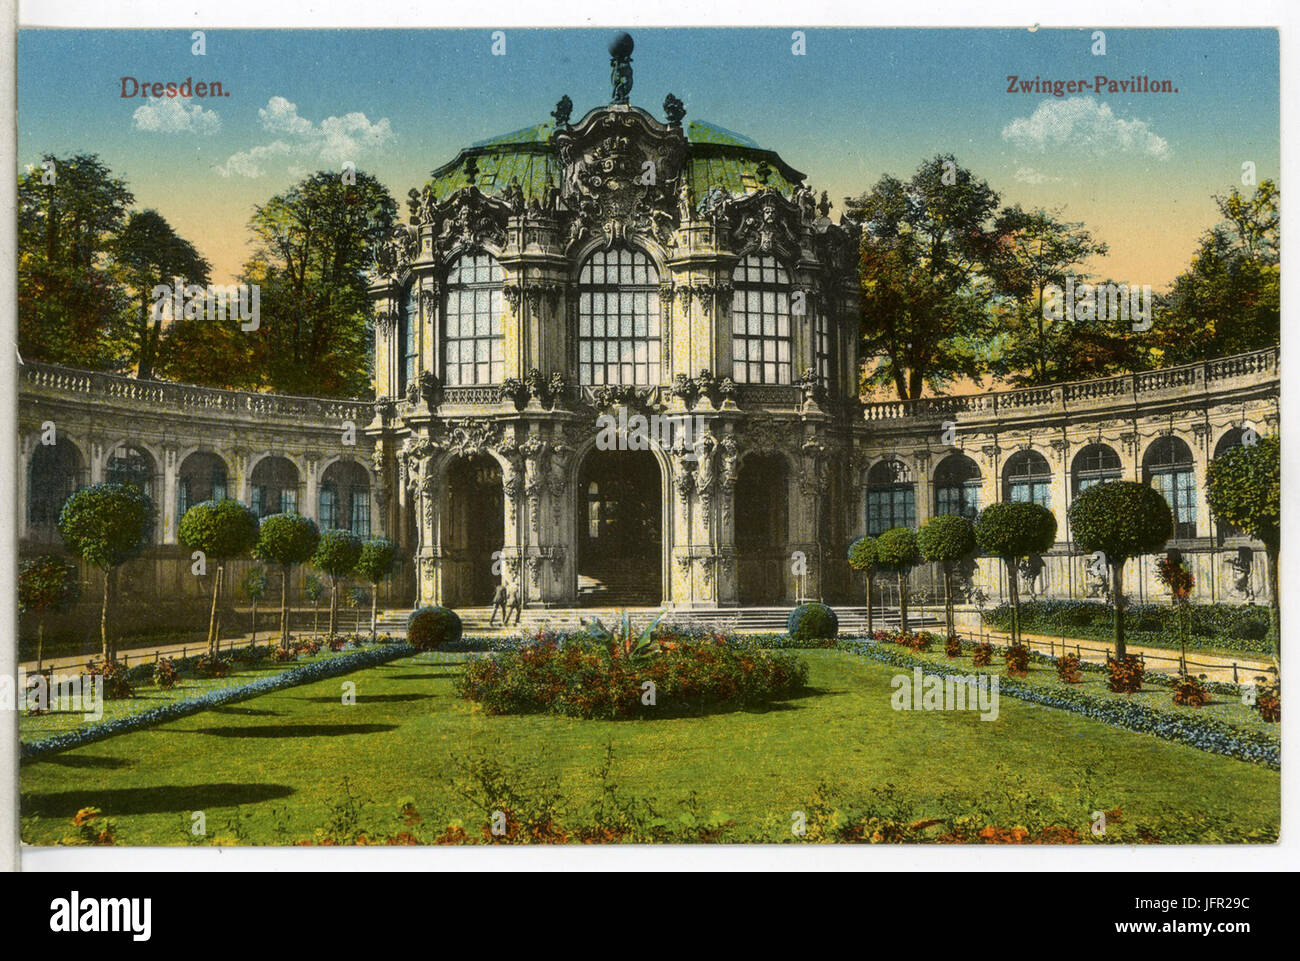 12686-Dresden-1911-Zwinger - Pavillon-Brück & Sohn Kunstverlag Stock Photo